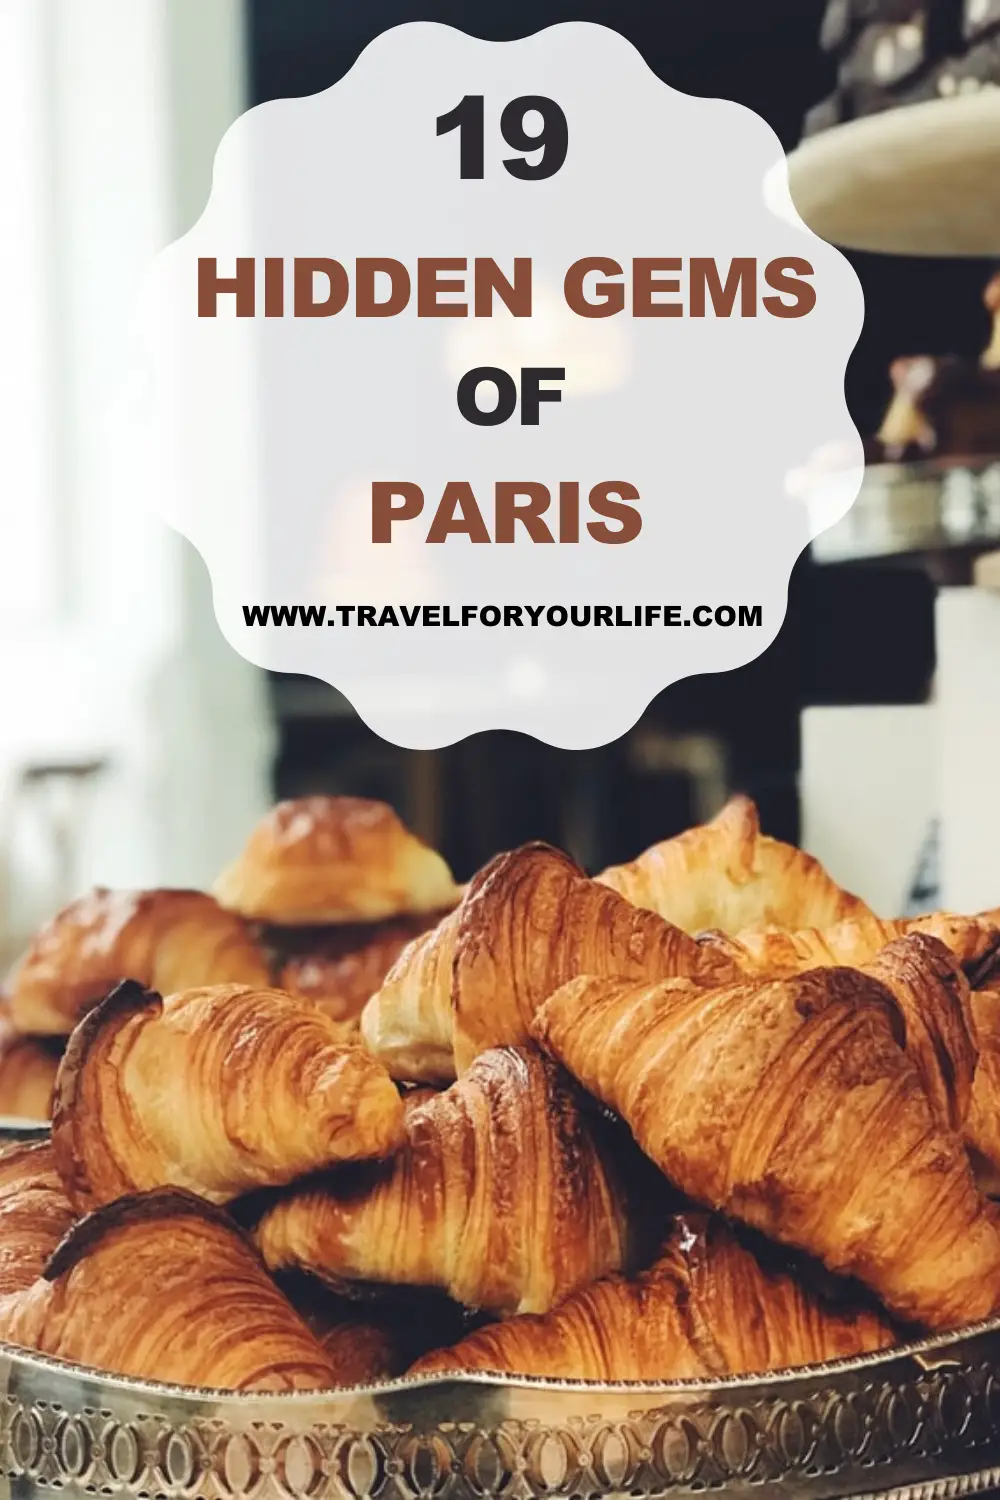 Hidden gems of Paris